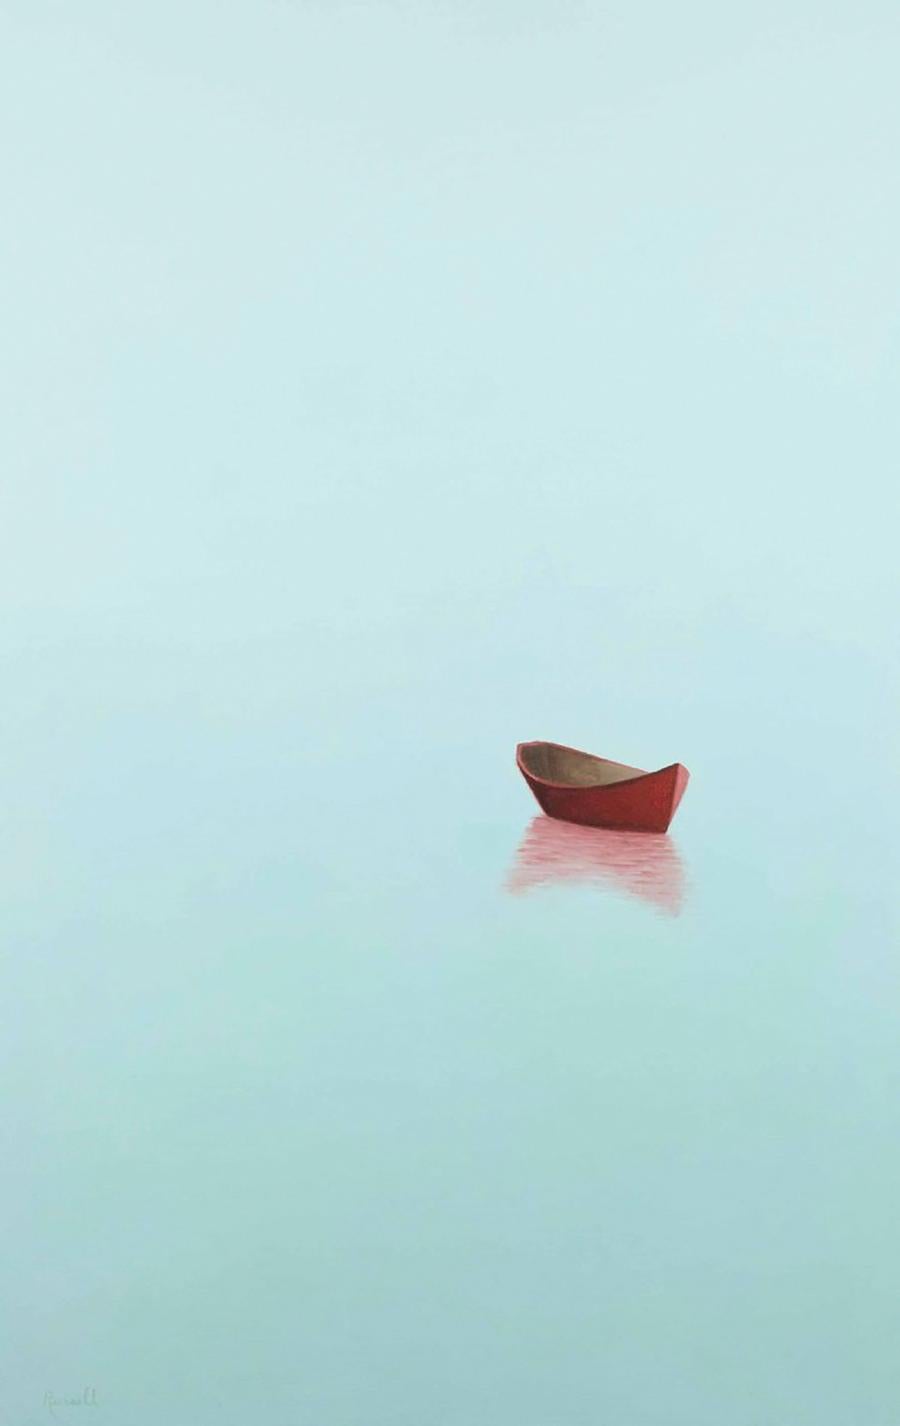 "Mystic Morning" ist ein 48x30 Ölgemälde auf Leinwand des Künstlers Matthew Jay Russell, das ein leeres rotes Boot zeigt, das auf dem Wasser treibt, während der helle Himmel in den dunstigen, sanftblauen Horizont und die Wasserlinie übergeht. Das